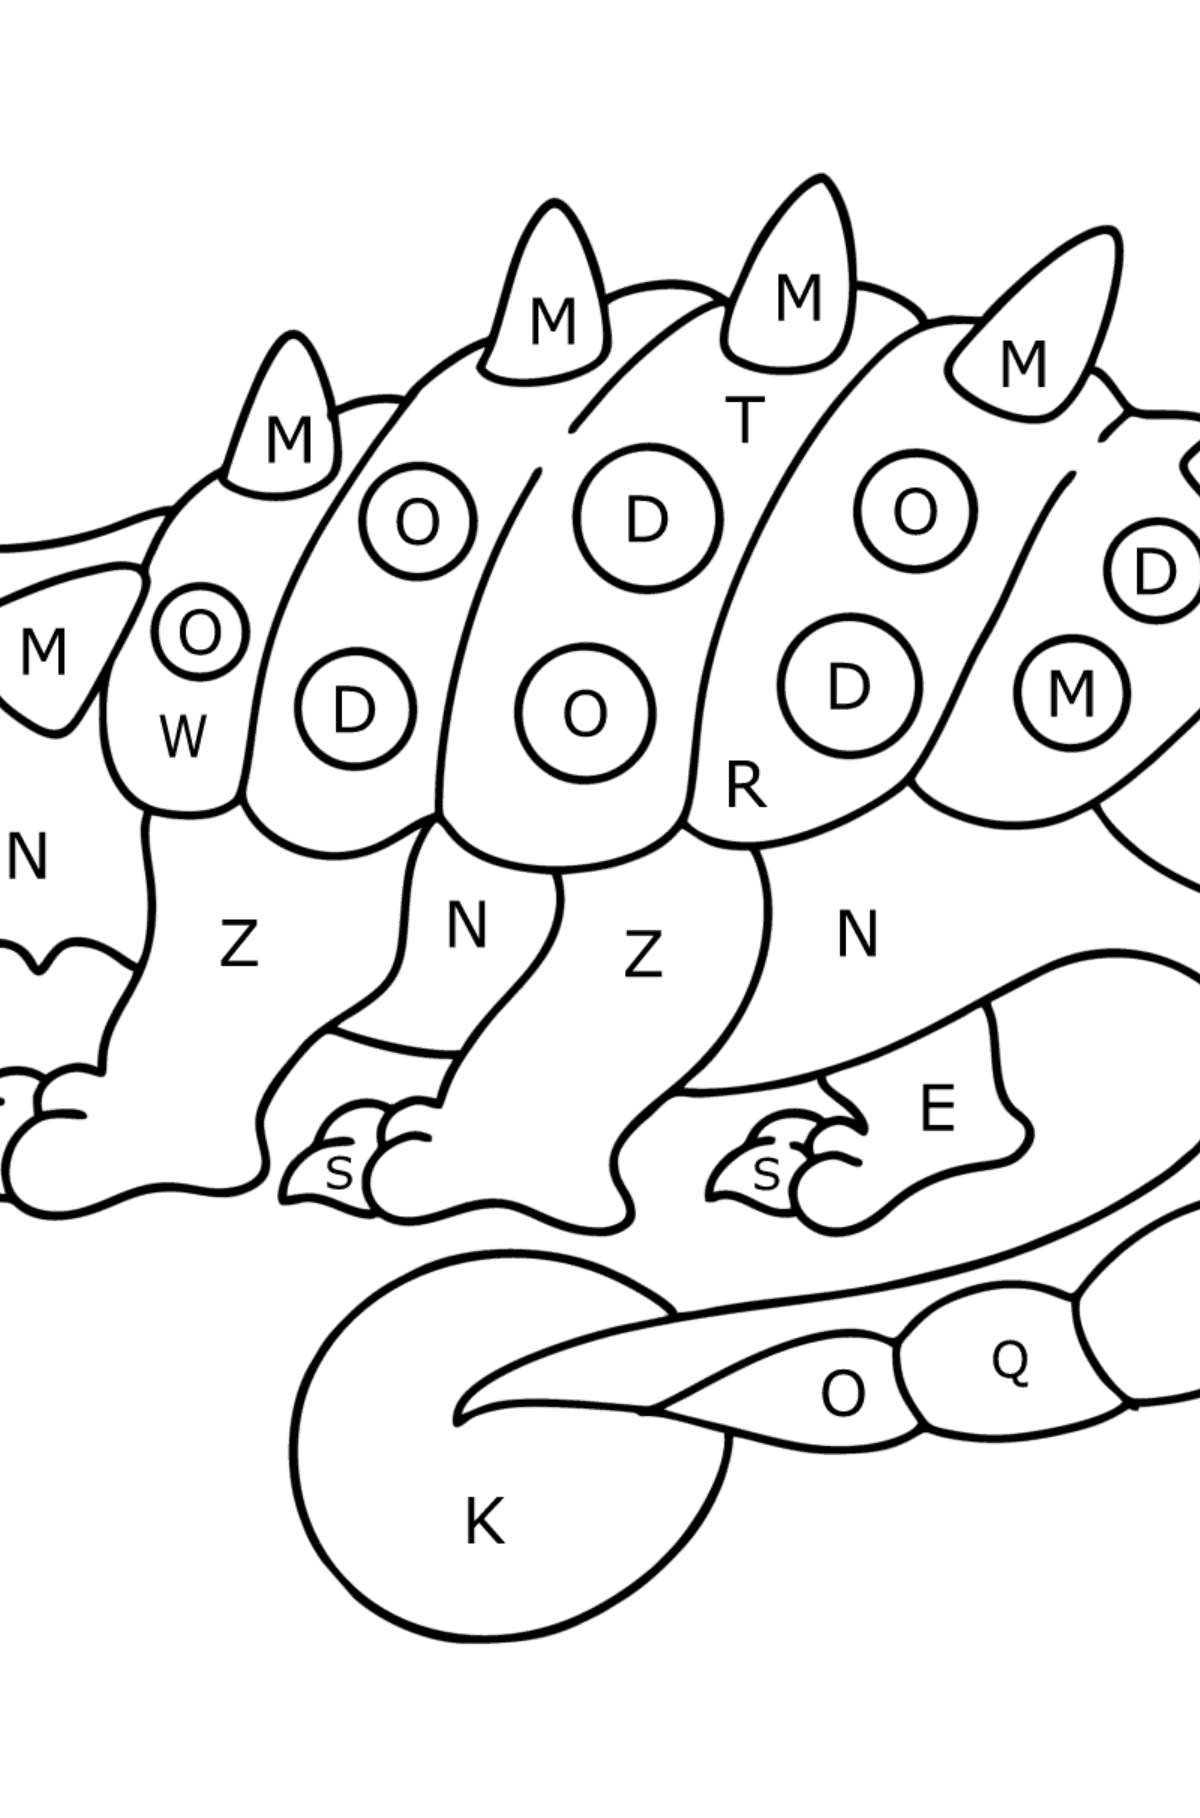 Coloriage Ankylosaure - Coloriage par Lettres pour les Enfants